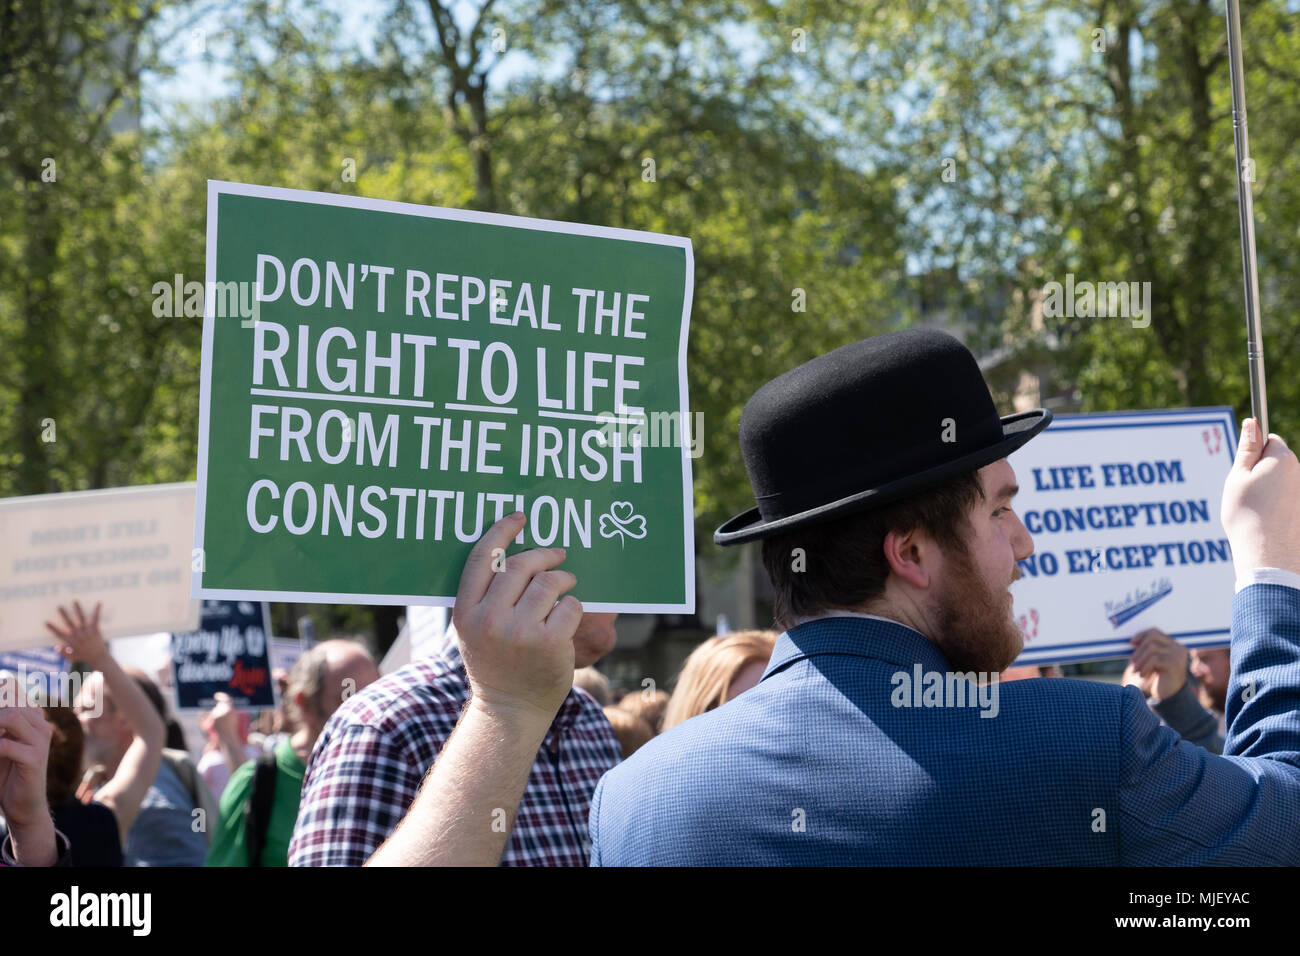 Londres, Royaume-Uni, 5 mai 2018, les membres de la Marche pour la vie UK a organisé une marche à travers le centre de Londres. Un homme est titulaire d'un n'avez pas d'abroger les droits à la vie placard Crédit : Adrian mabe/Alamy Live News Banque D'Images